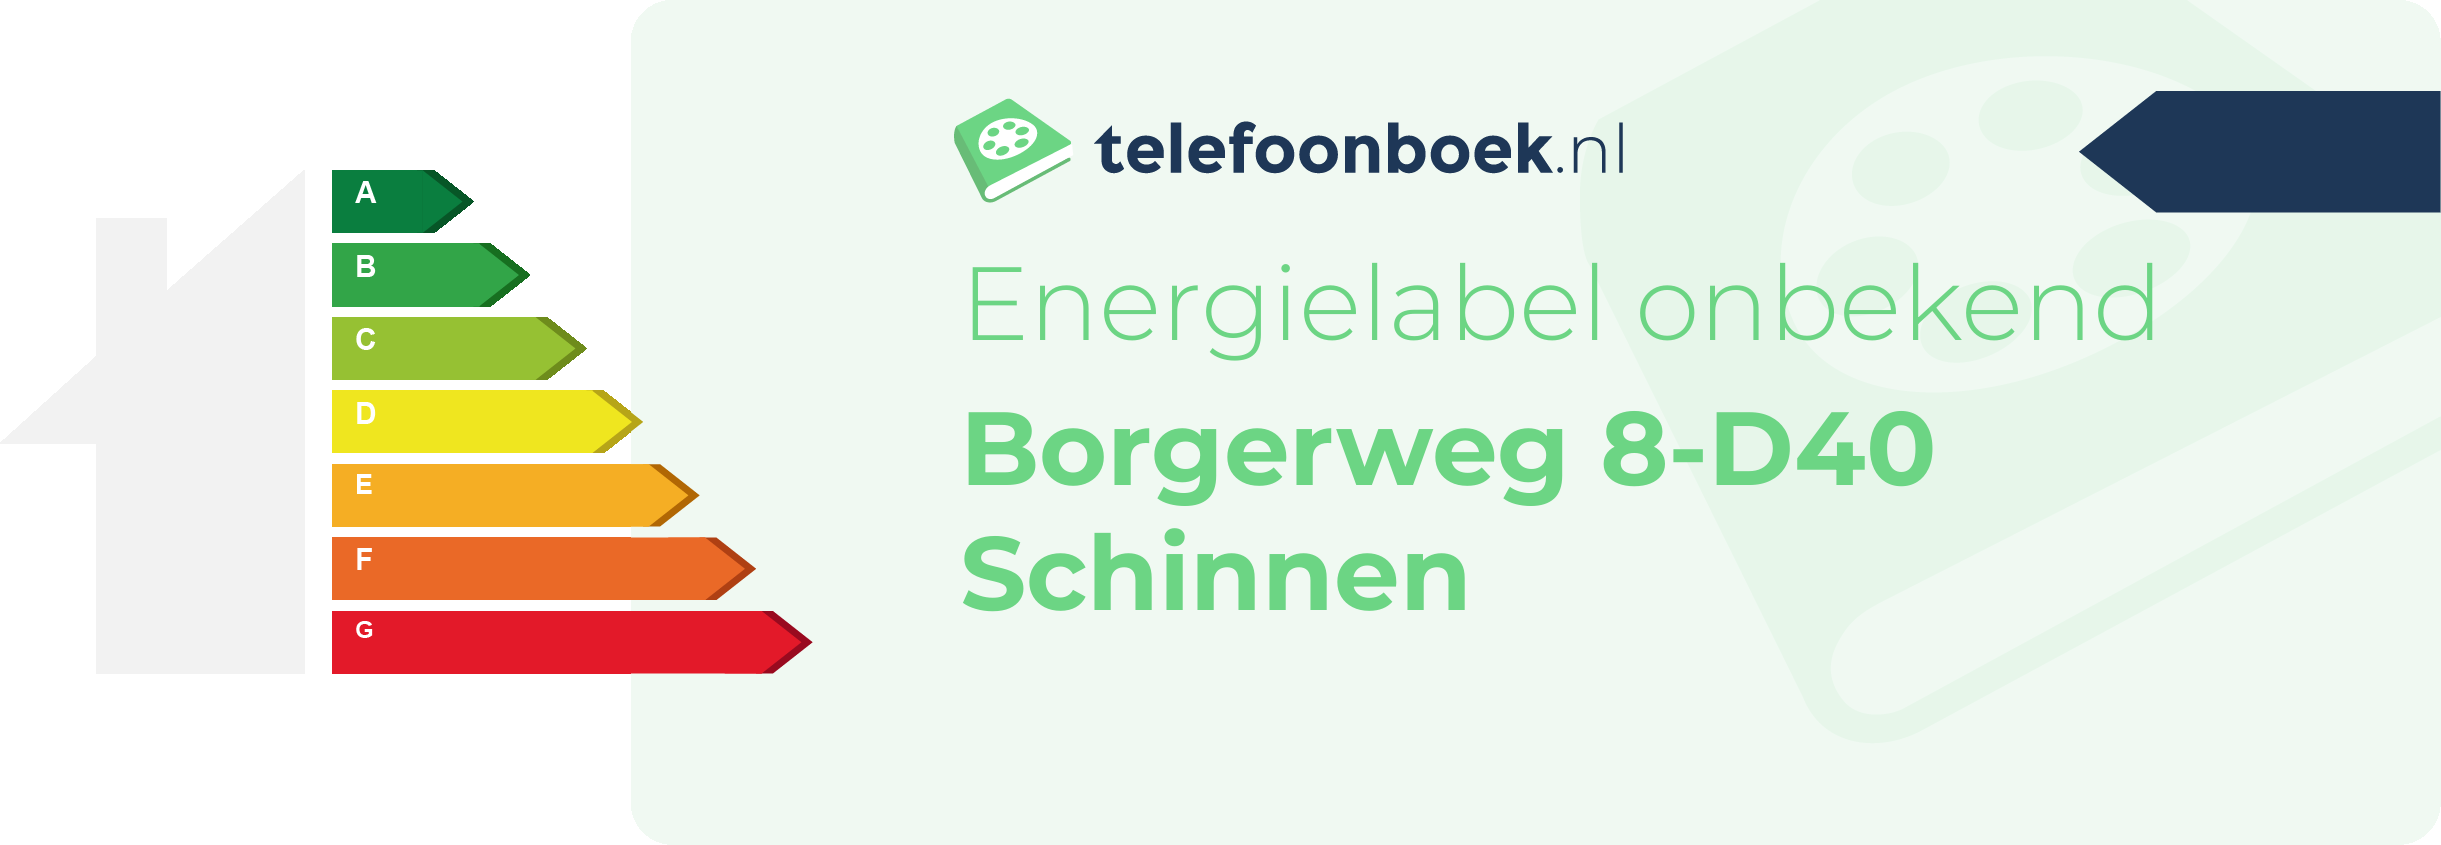 Energielabel Borgerweg 8-D40 Schinnen